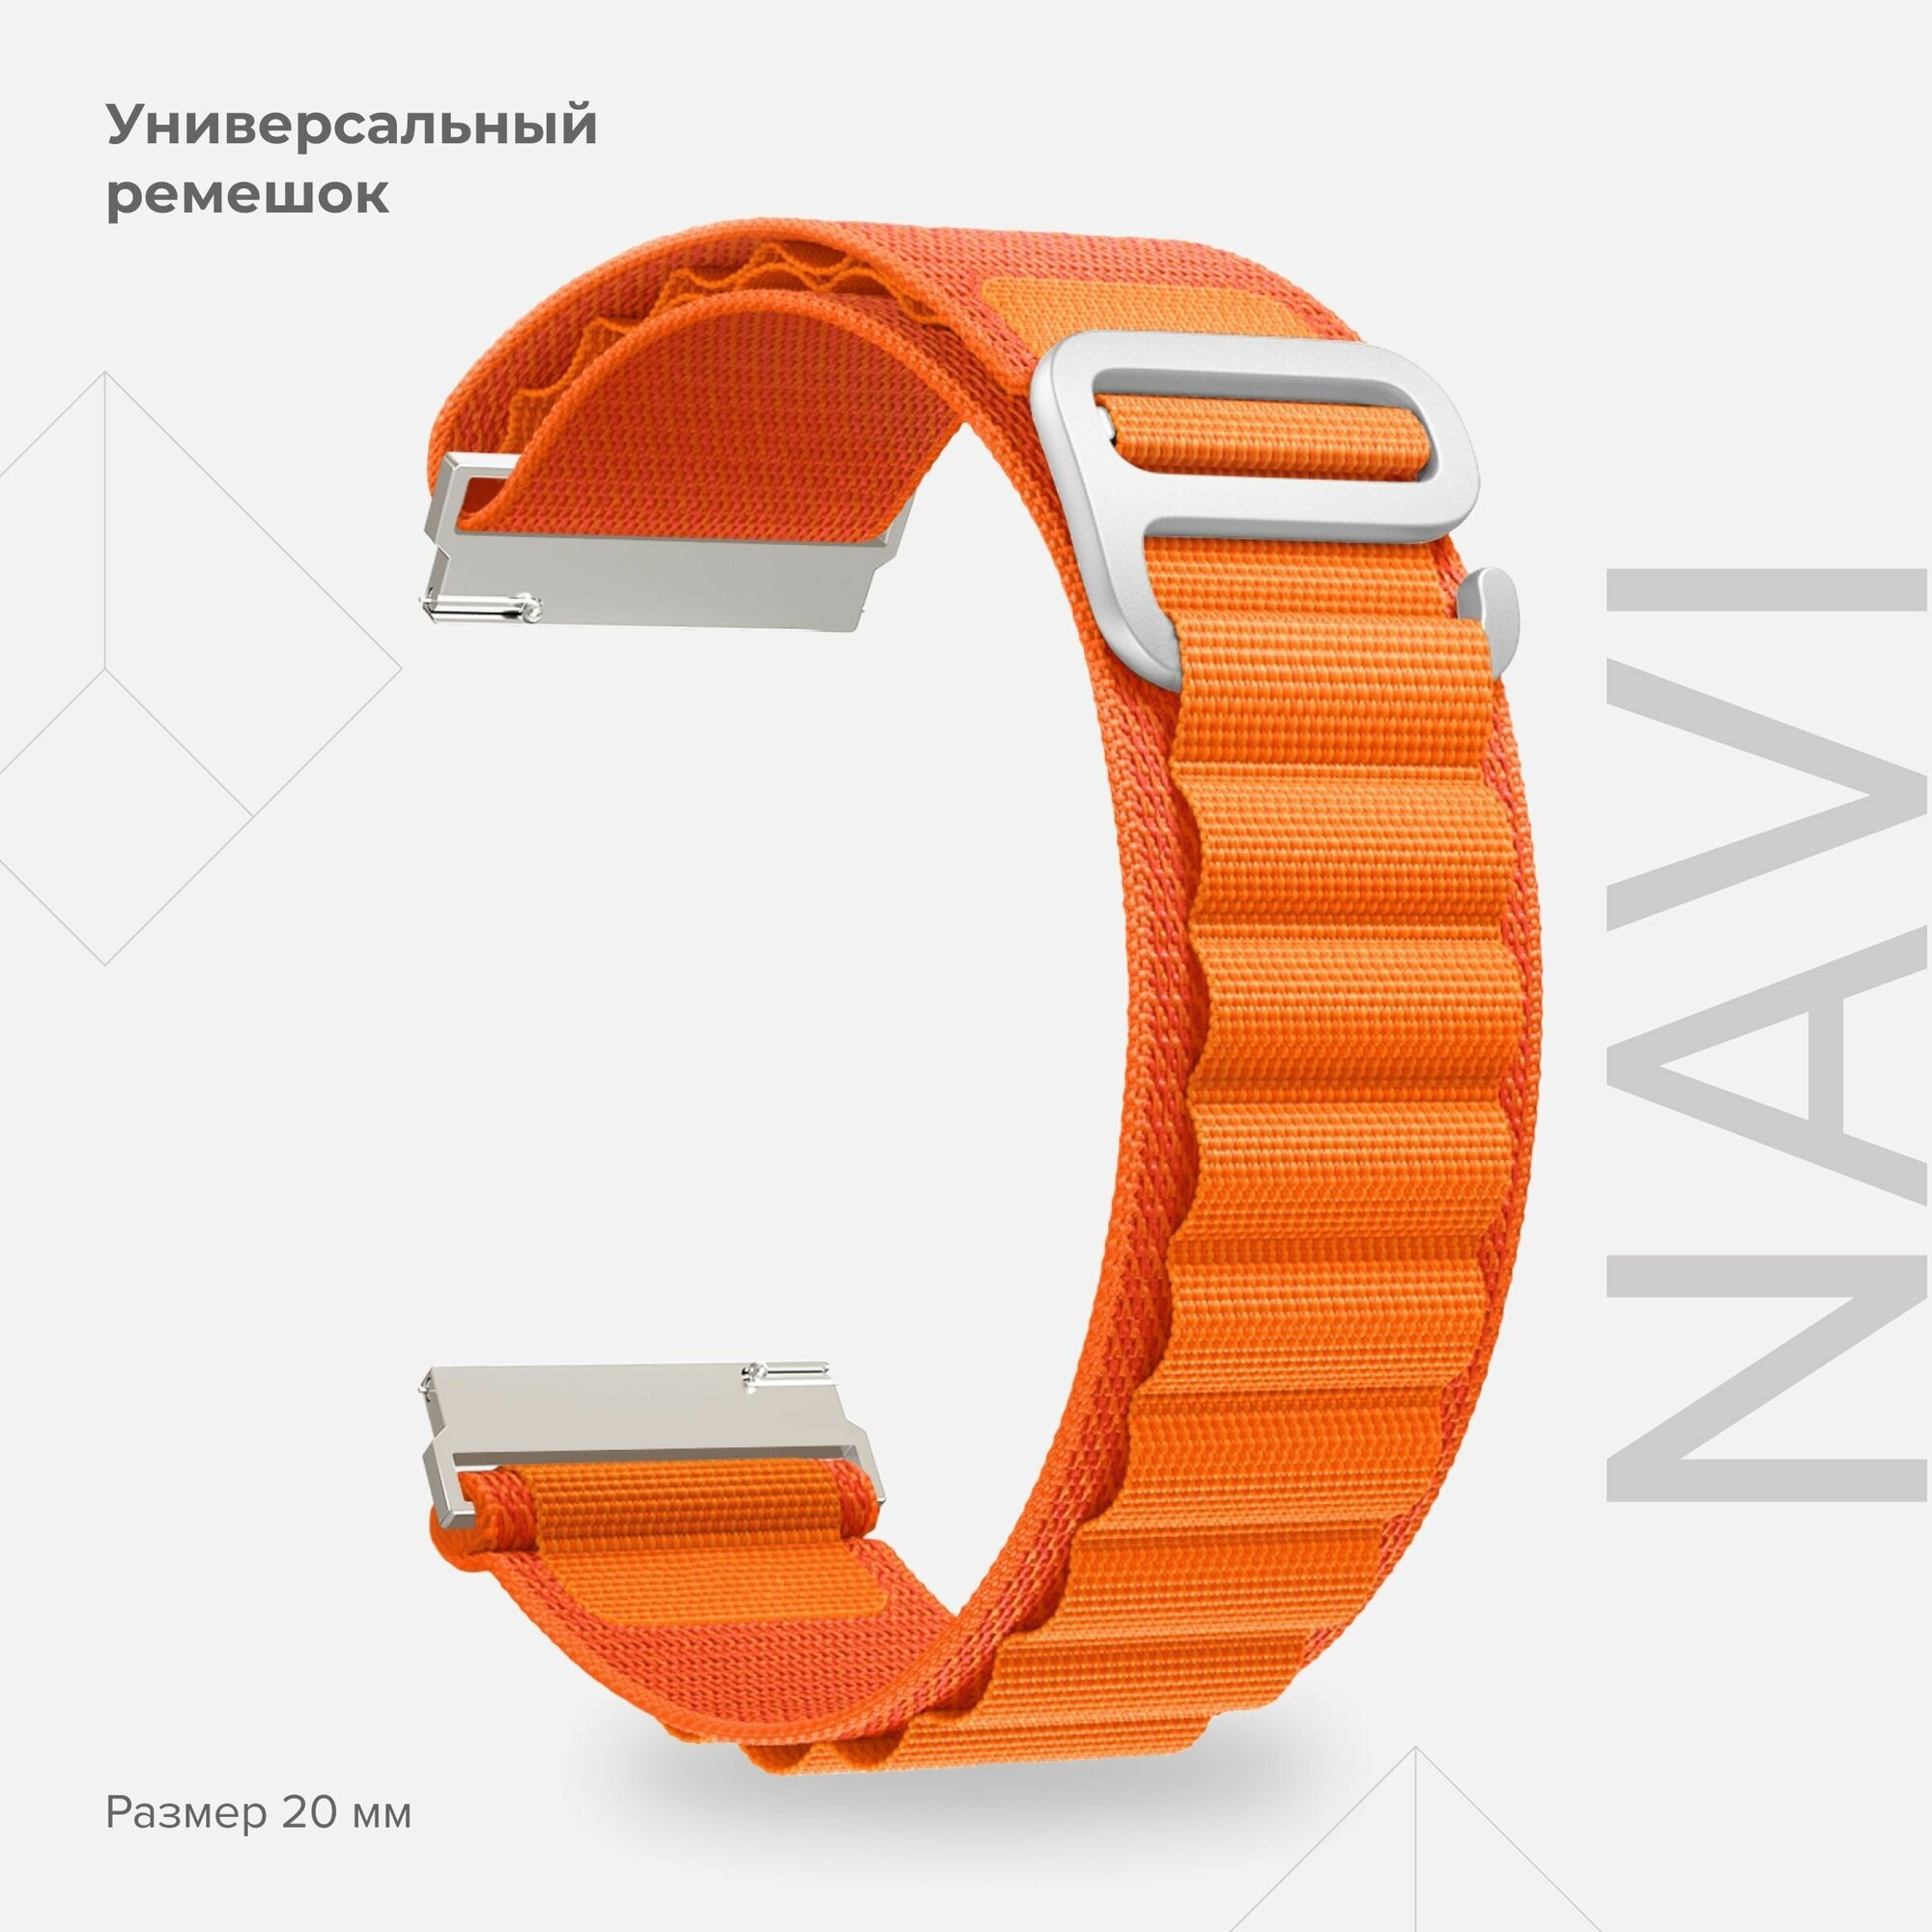 Универсальный петлевой нейлоновый ремешок для часов 20 mm LYAMBDA NAVI DSN-19-20-OR для часов Garmin Samsung Huawei LG Rolex Honor оранжевый